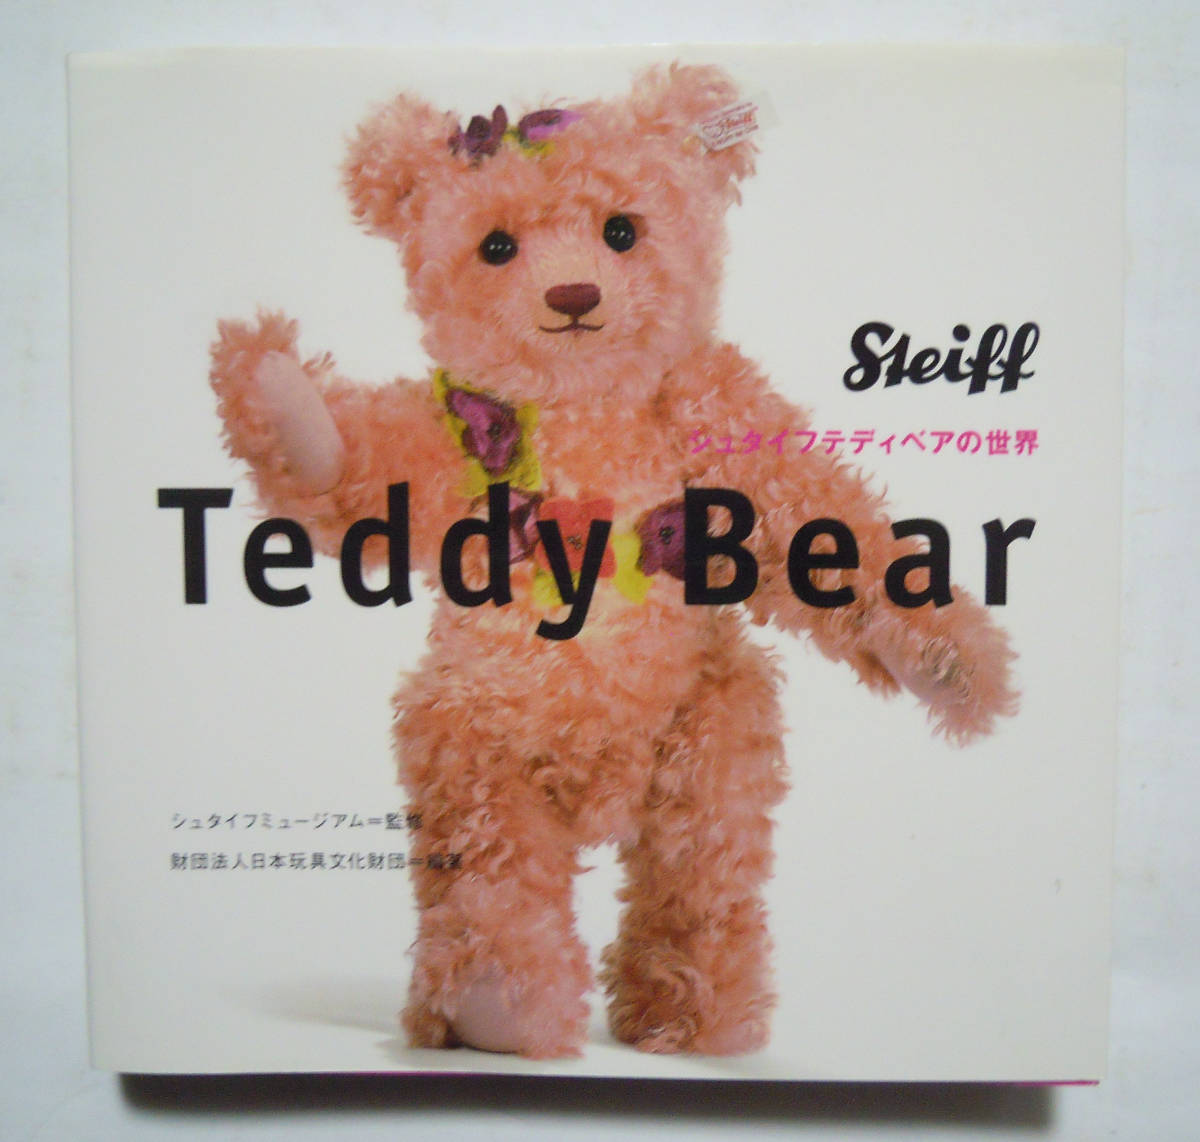 シュタイフティディベアの世界Steiff Teddy Bear(シュタイフミュージアム監修/財団法人日本玩具文化財団編著'11)くまのぬいぐるみ抱き人形_画像1